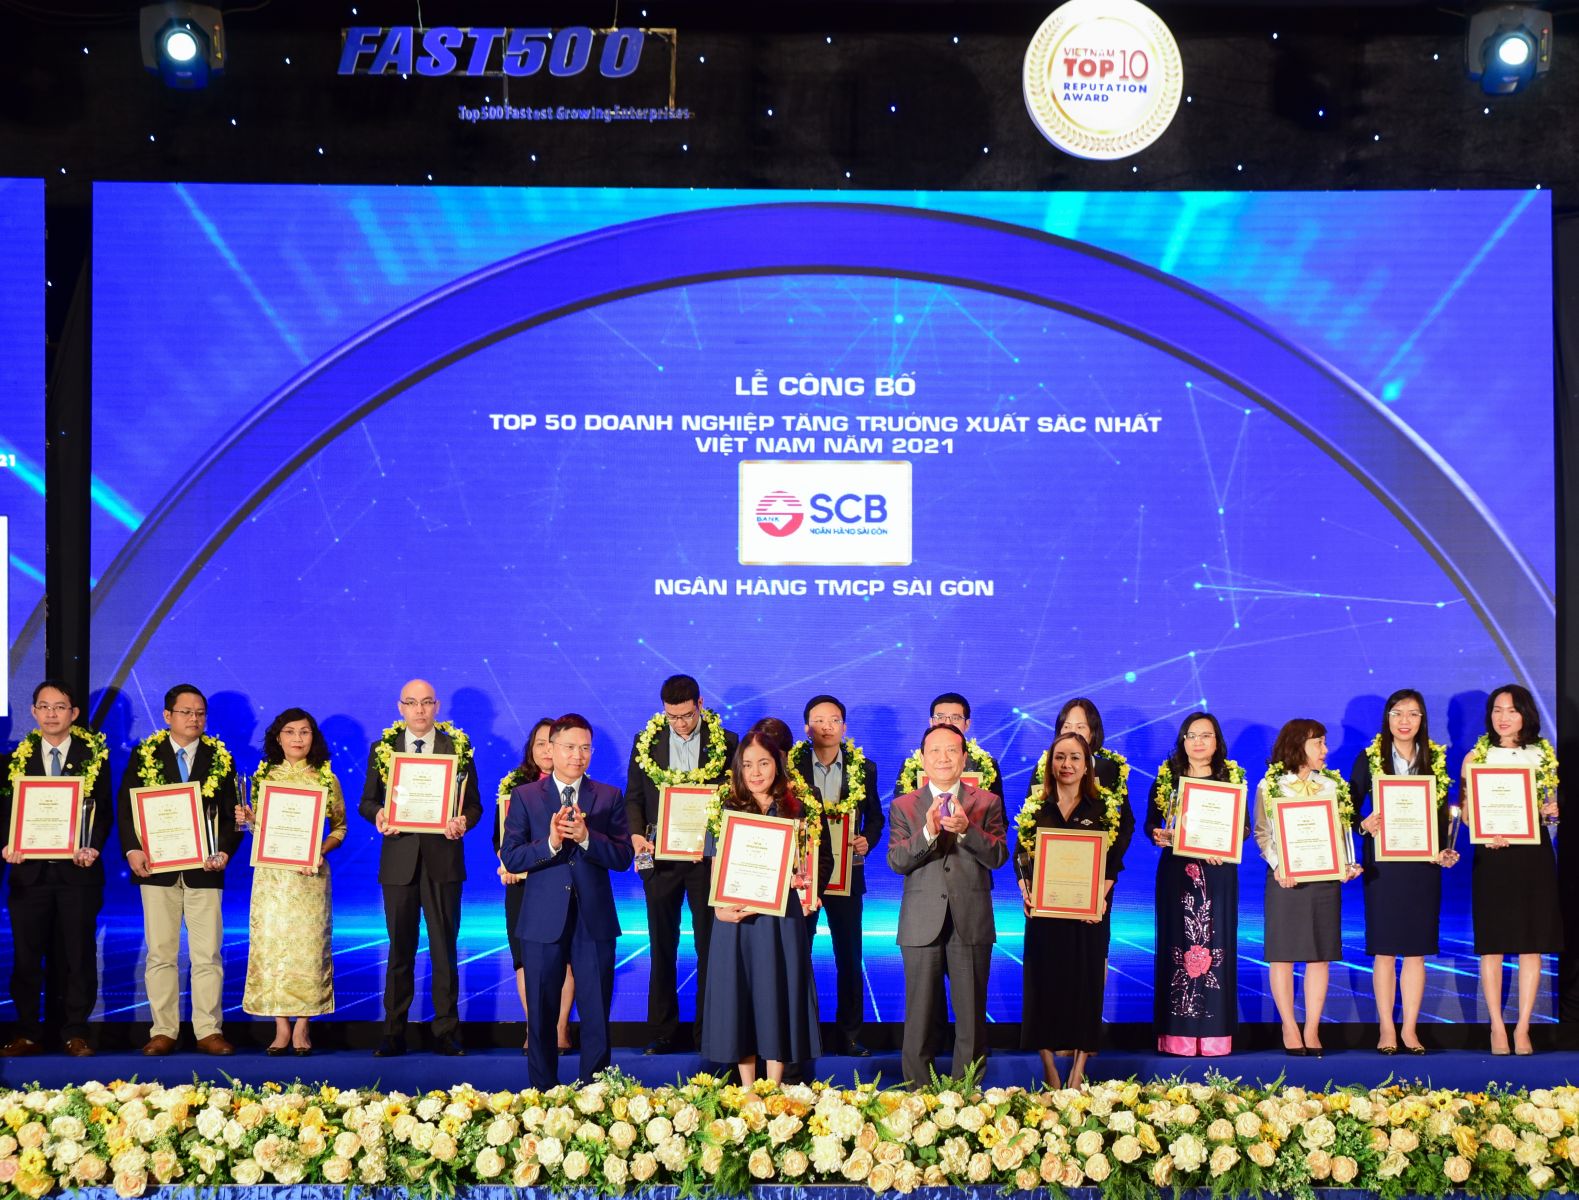 Đại diện SCB nhận giải Top 50 Doanh nghiệp tăng trưởng xuất sắc nhất Việt Nam năm 2021.